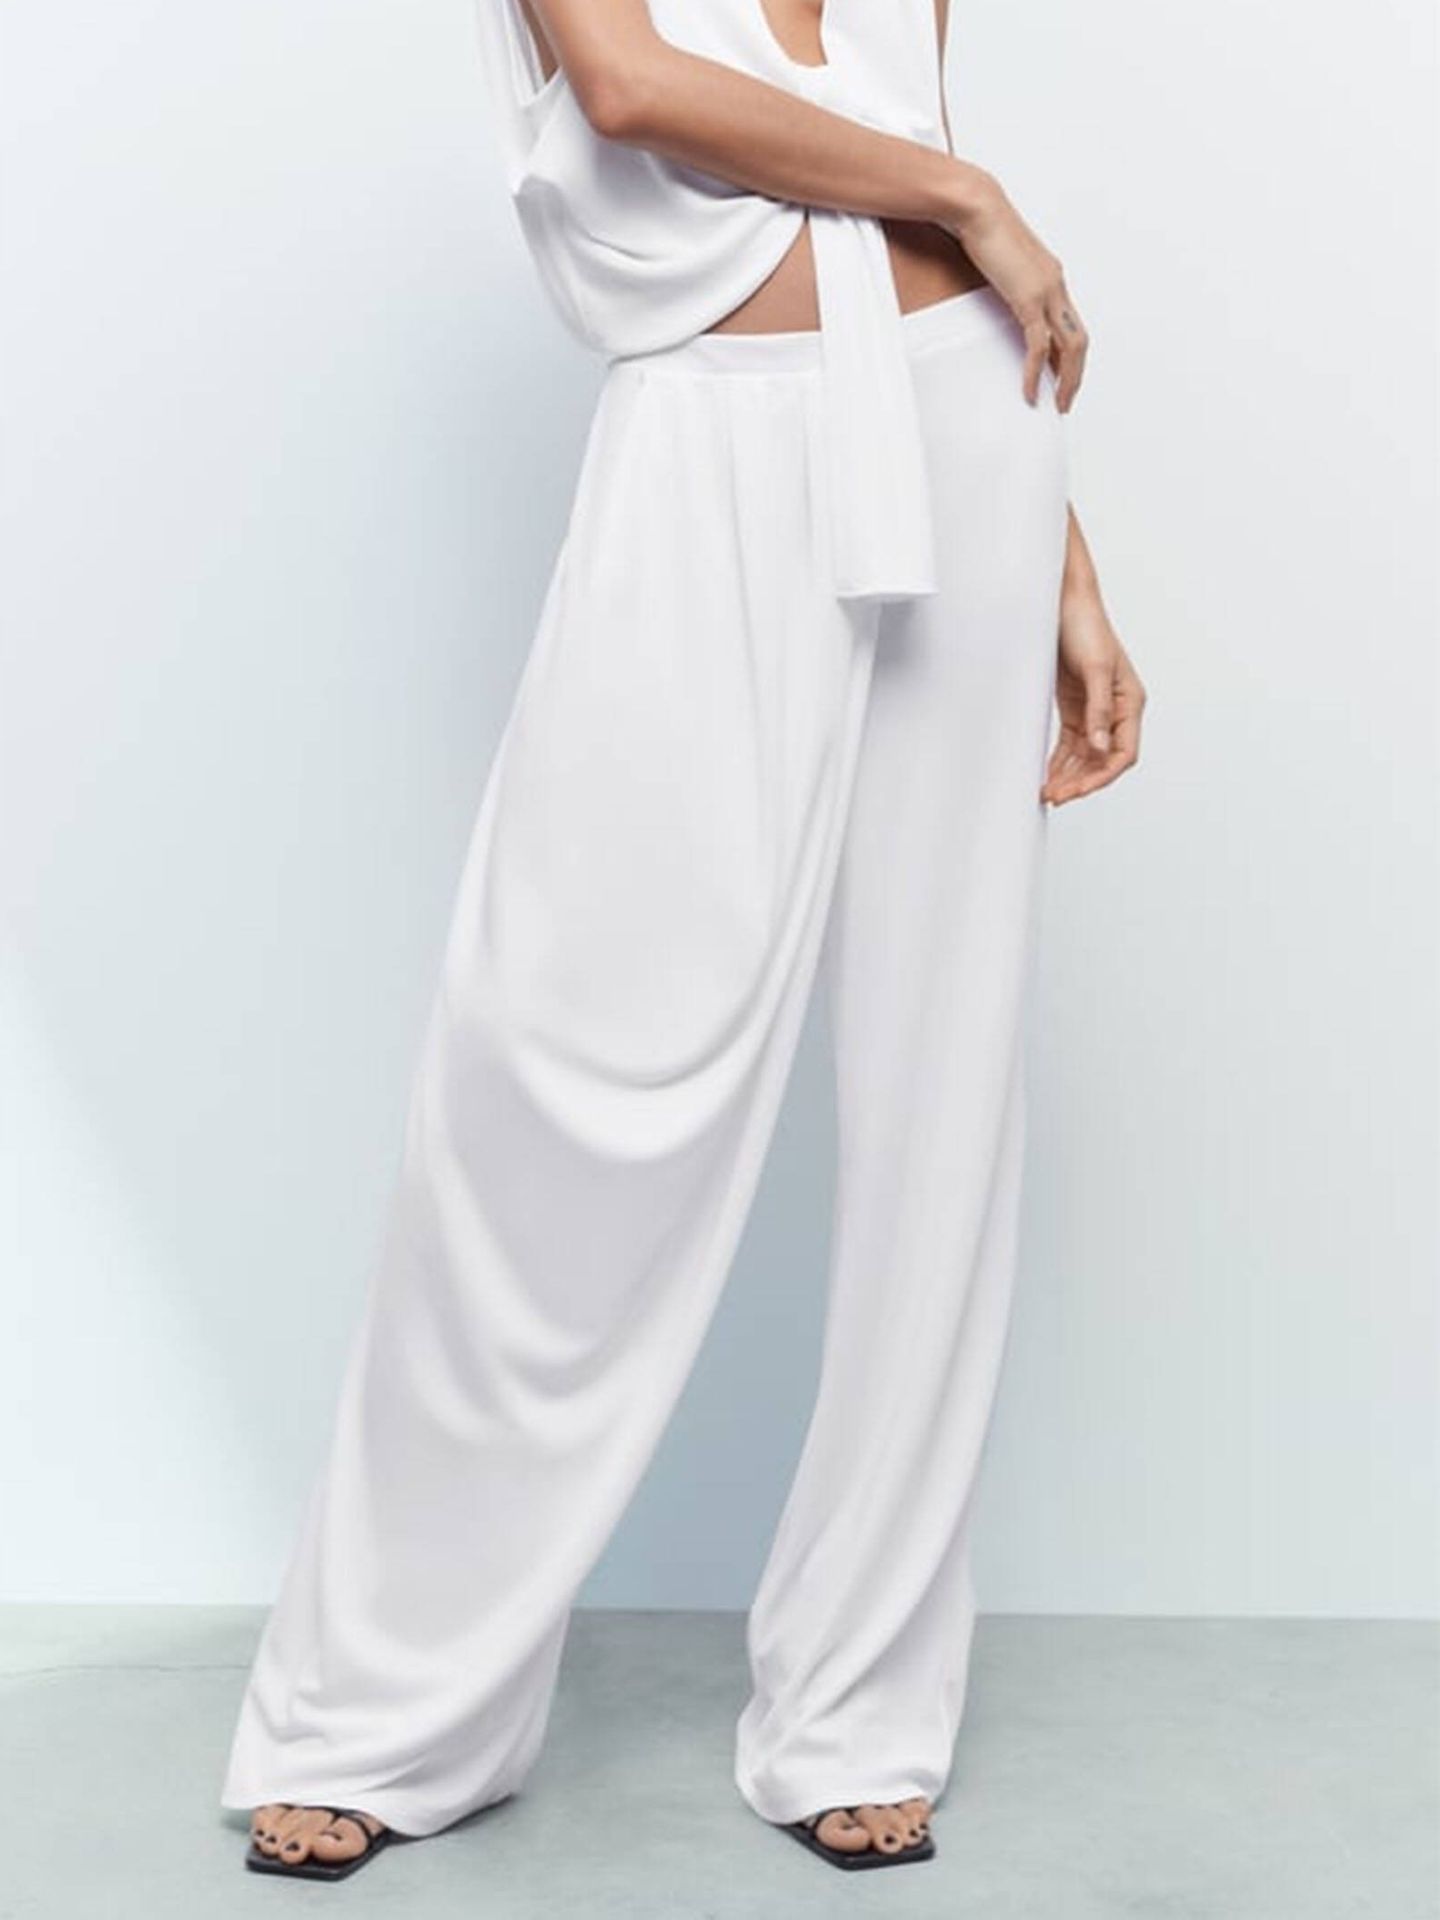 Ancho, cómodo y original: así es el nuevo pantalón blanco estilo pareo. (Zara/Cortesía)